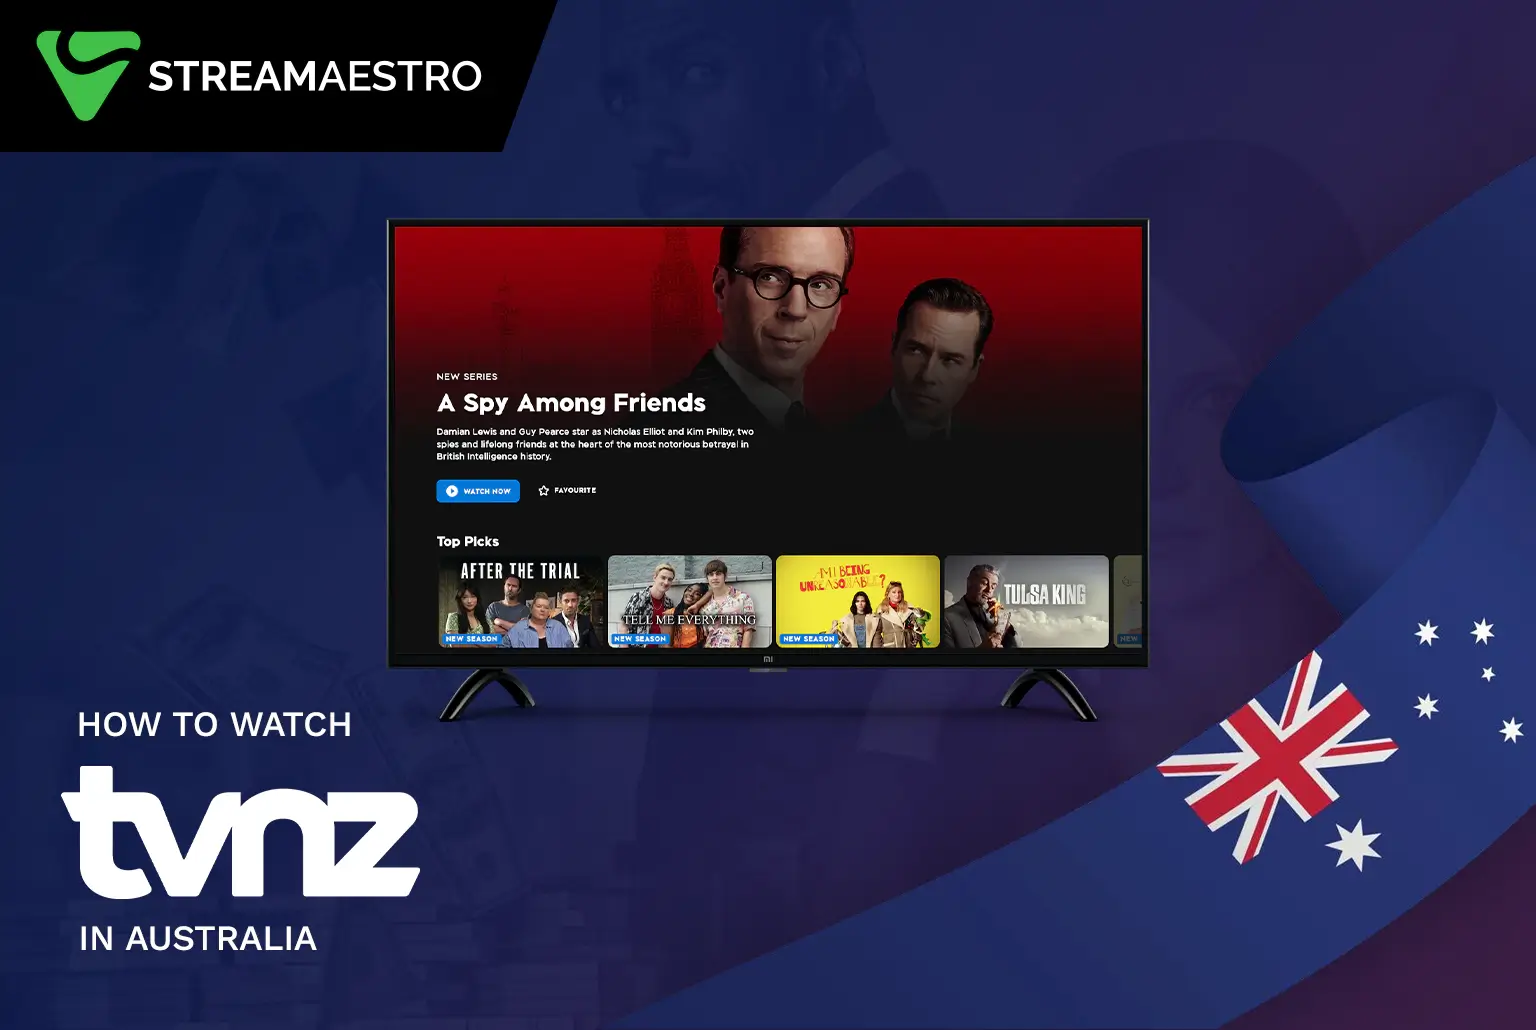 TVNZ in Australia